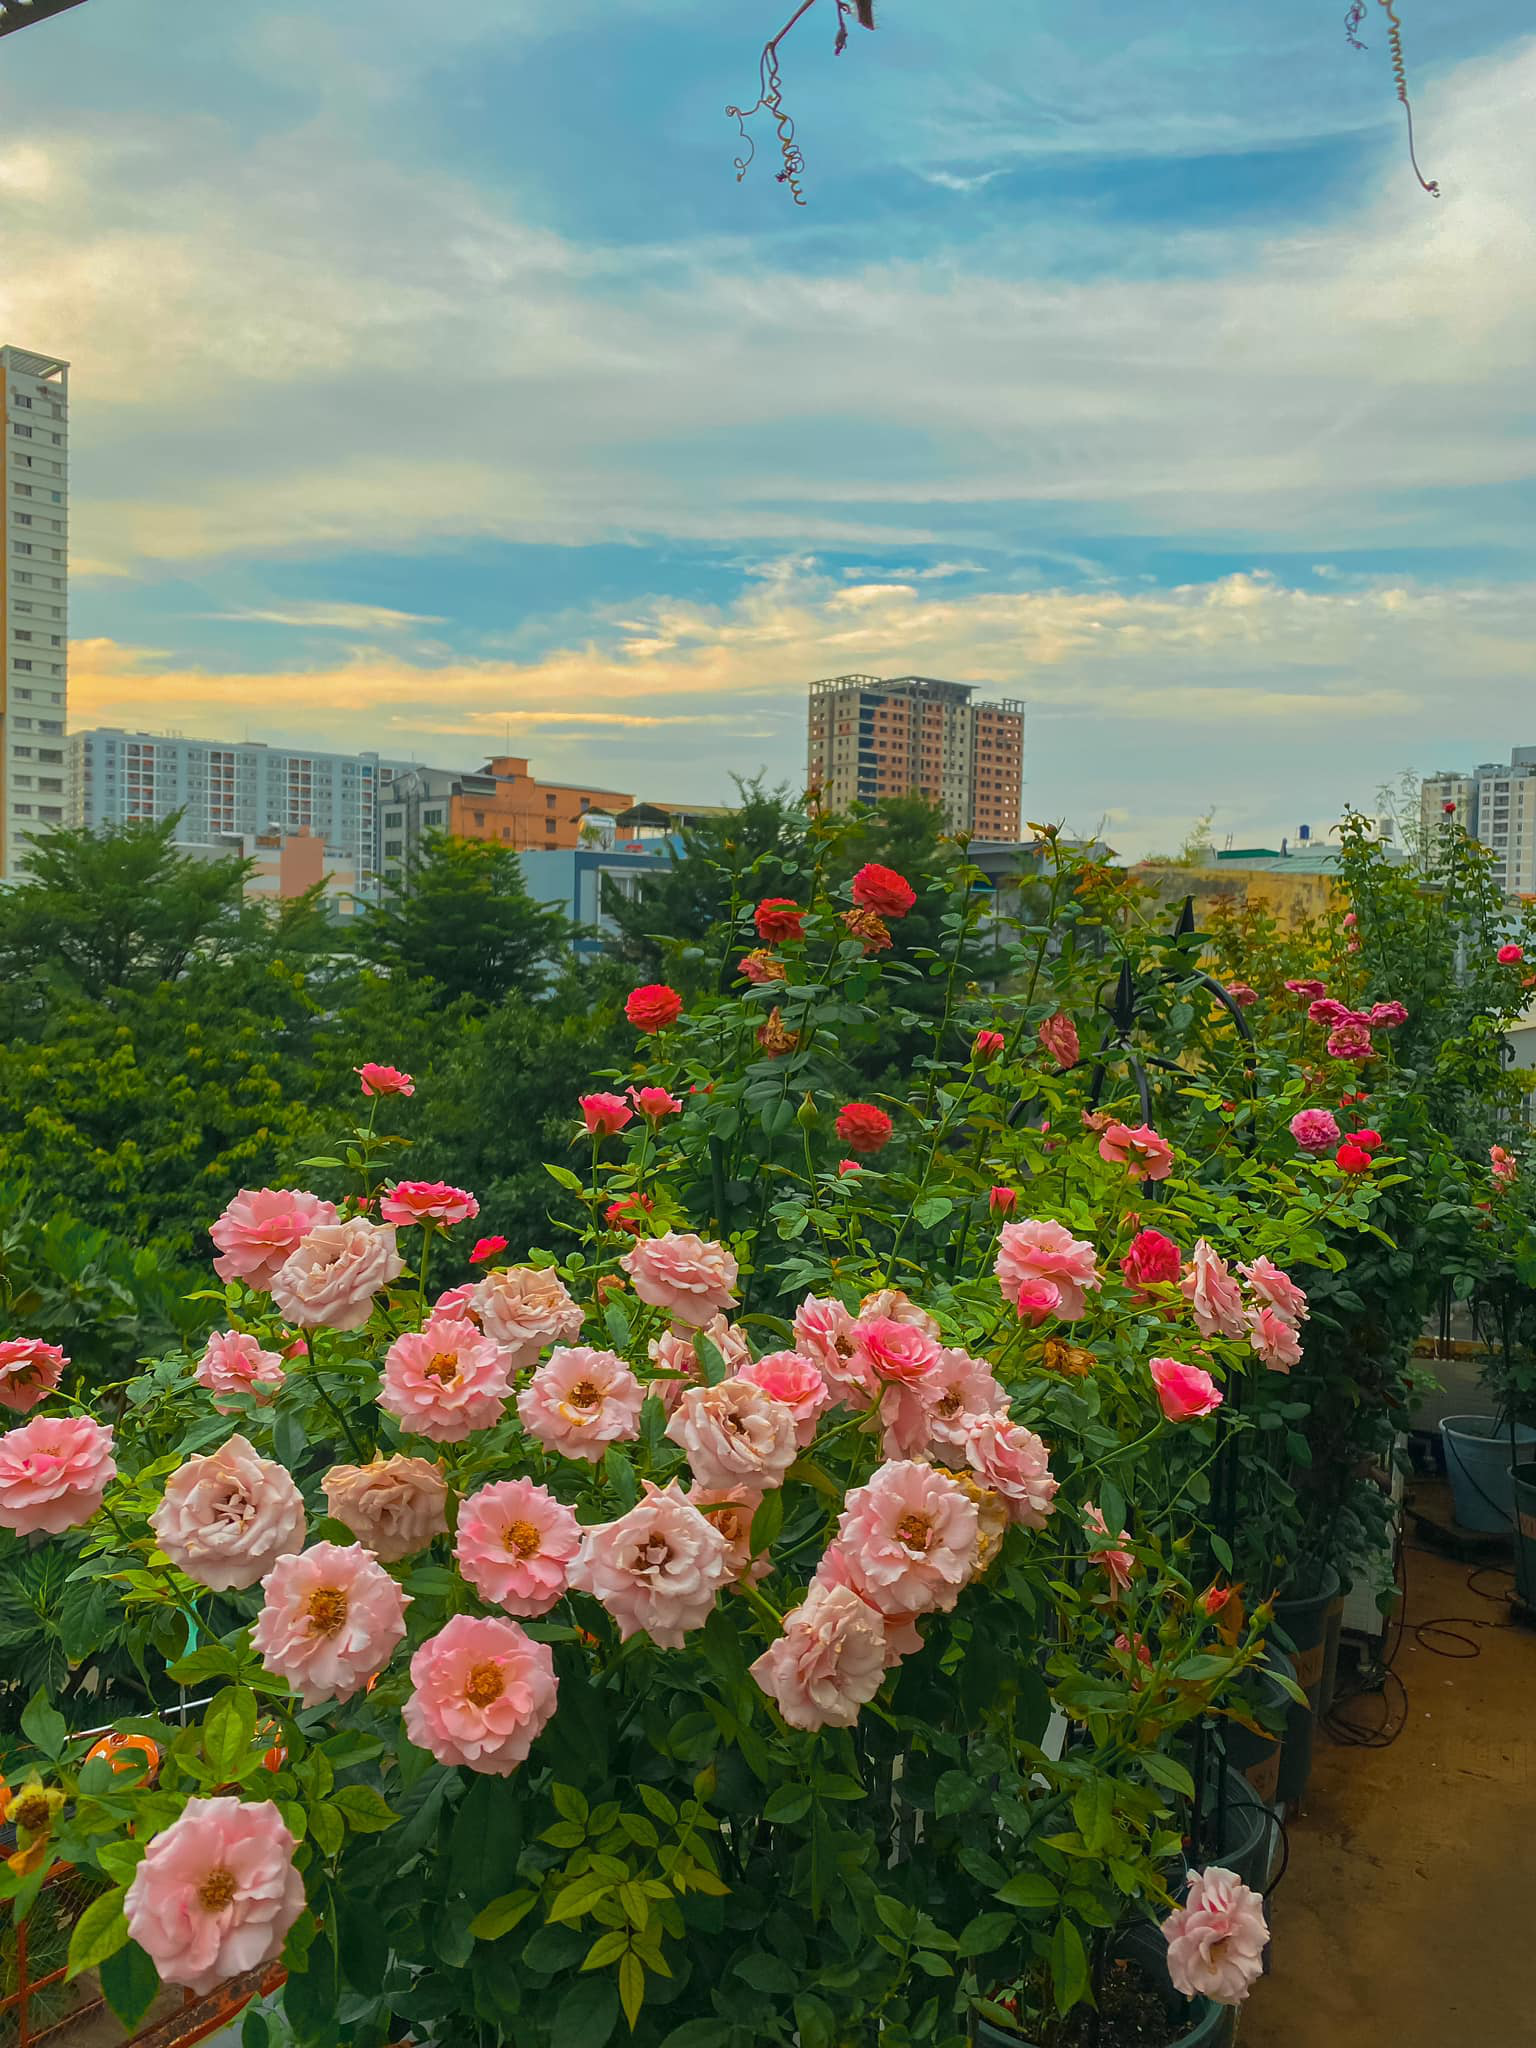 Vườn hoa hồng ngoại đẹp ngây ngất trên sân thượng giữa Sài thành của trai đẹp Sài Gòn - Ảnh 4.